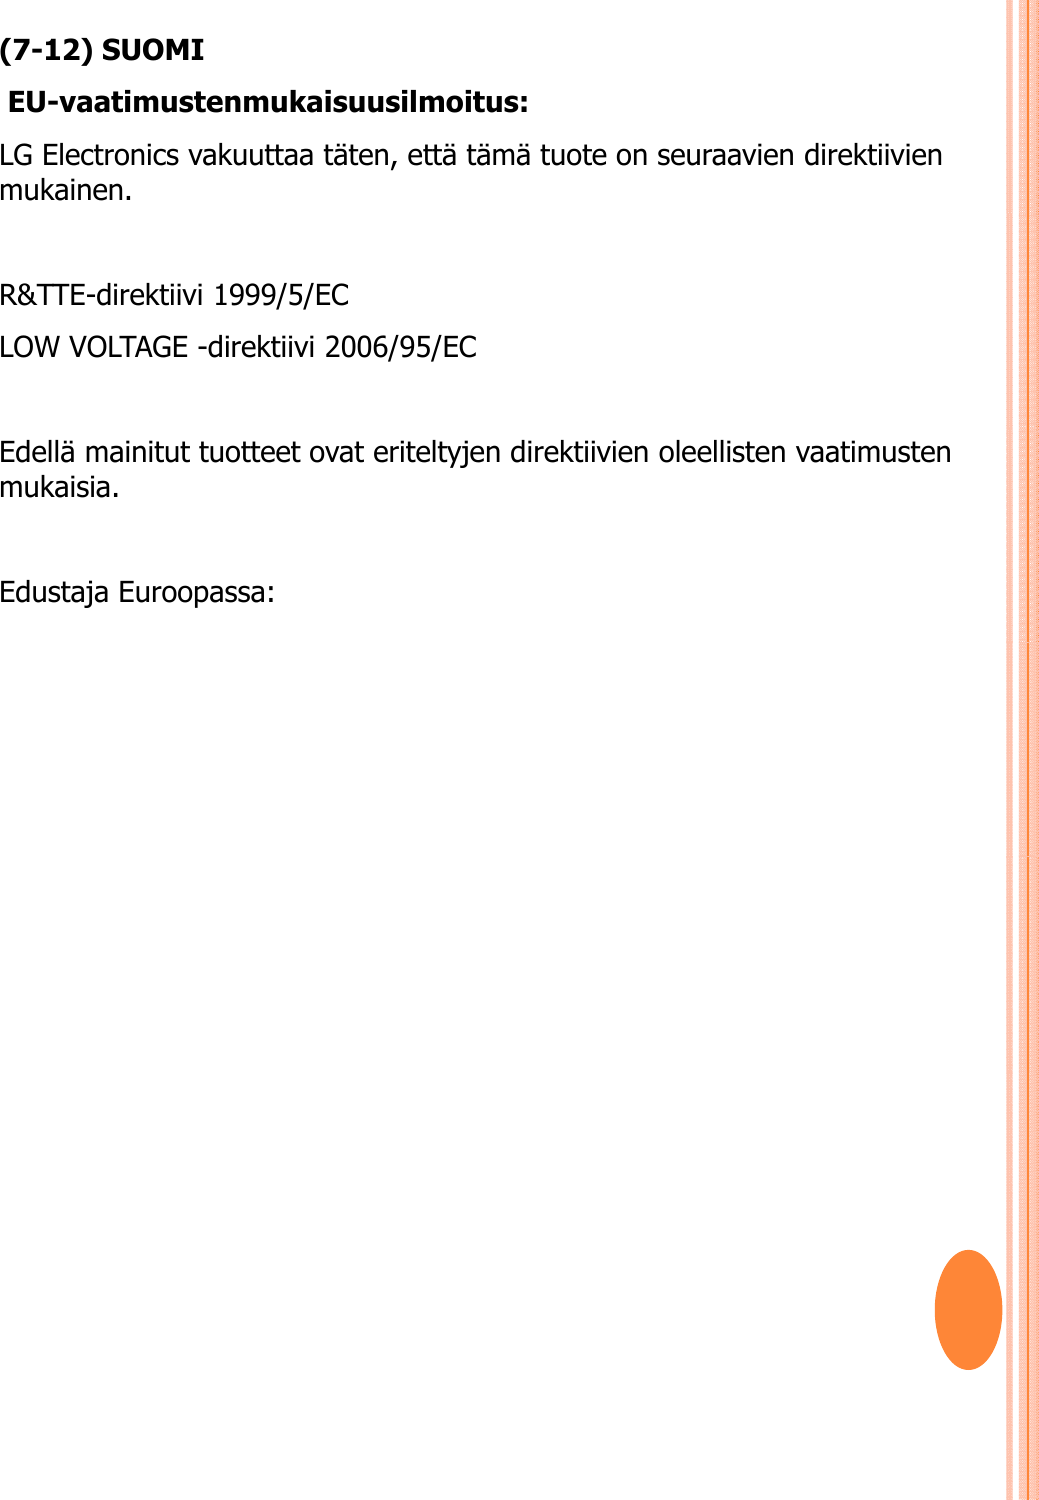 (7-12) SUOMIEU-vaatimustenmukaisuusilmoitus: LG Electronics vakuuttaa täten, että tämä tuote on seuraavien direktiivien mukainen. R&amp;TTE-direktiivi 1999/5/EC LOW VOLTAGE -direktiivi 2006/95/EC Edellä mainitut tuotteet ovat eriteltyjen direktiivien oleellisten vaatimusten mukaisia. Edustaja Euroopassa: 